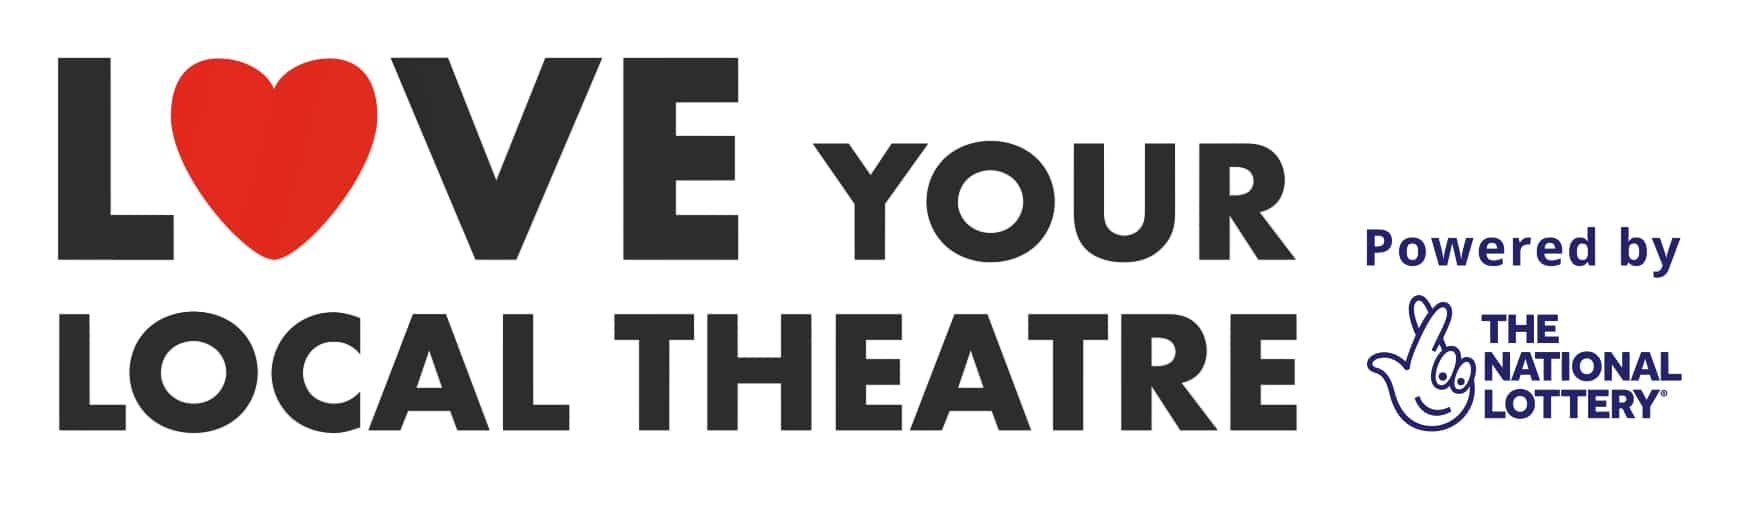 Love Your Local Theatre